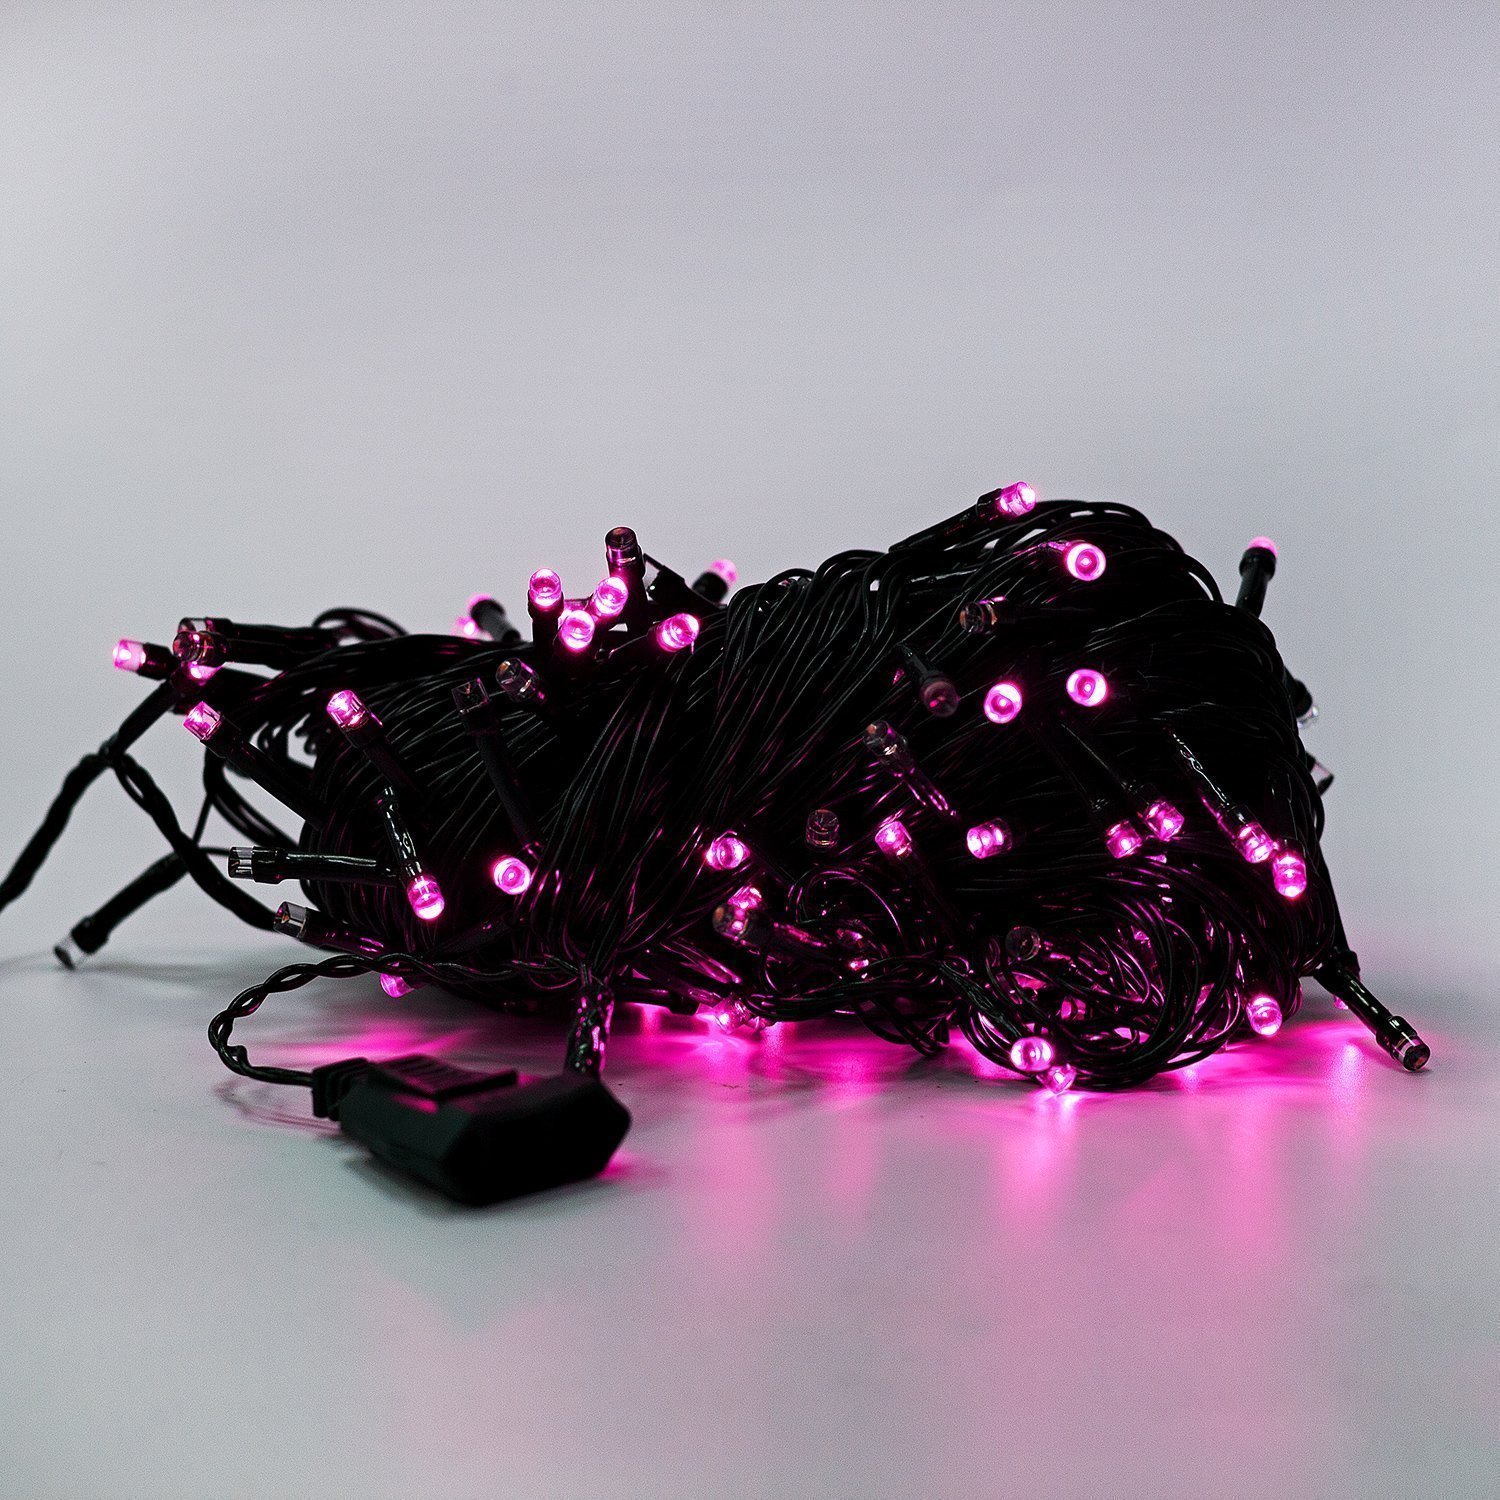 Гирлянда Kurato светодиодная нить, ламп: 200 шт., 20 м, режимов: 1, от сети, розовый (132736)